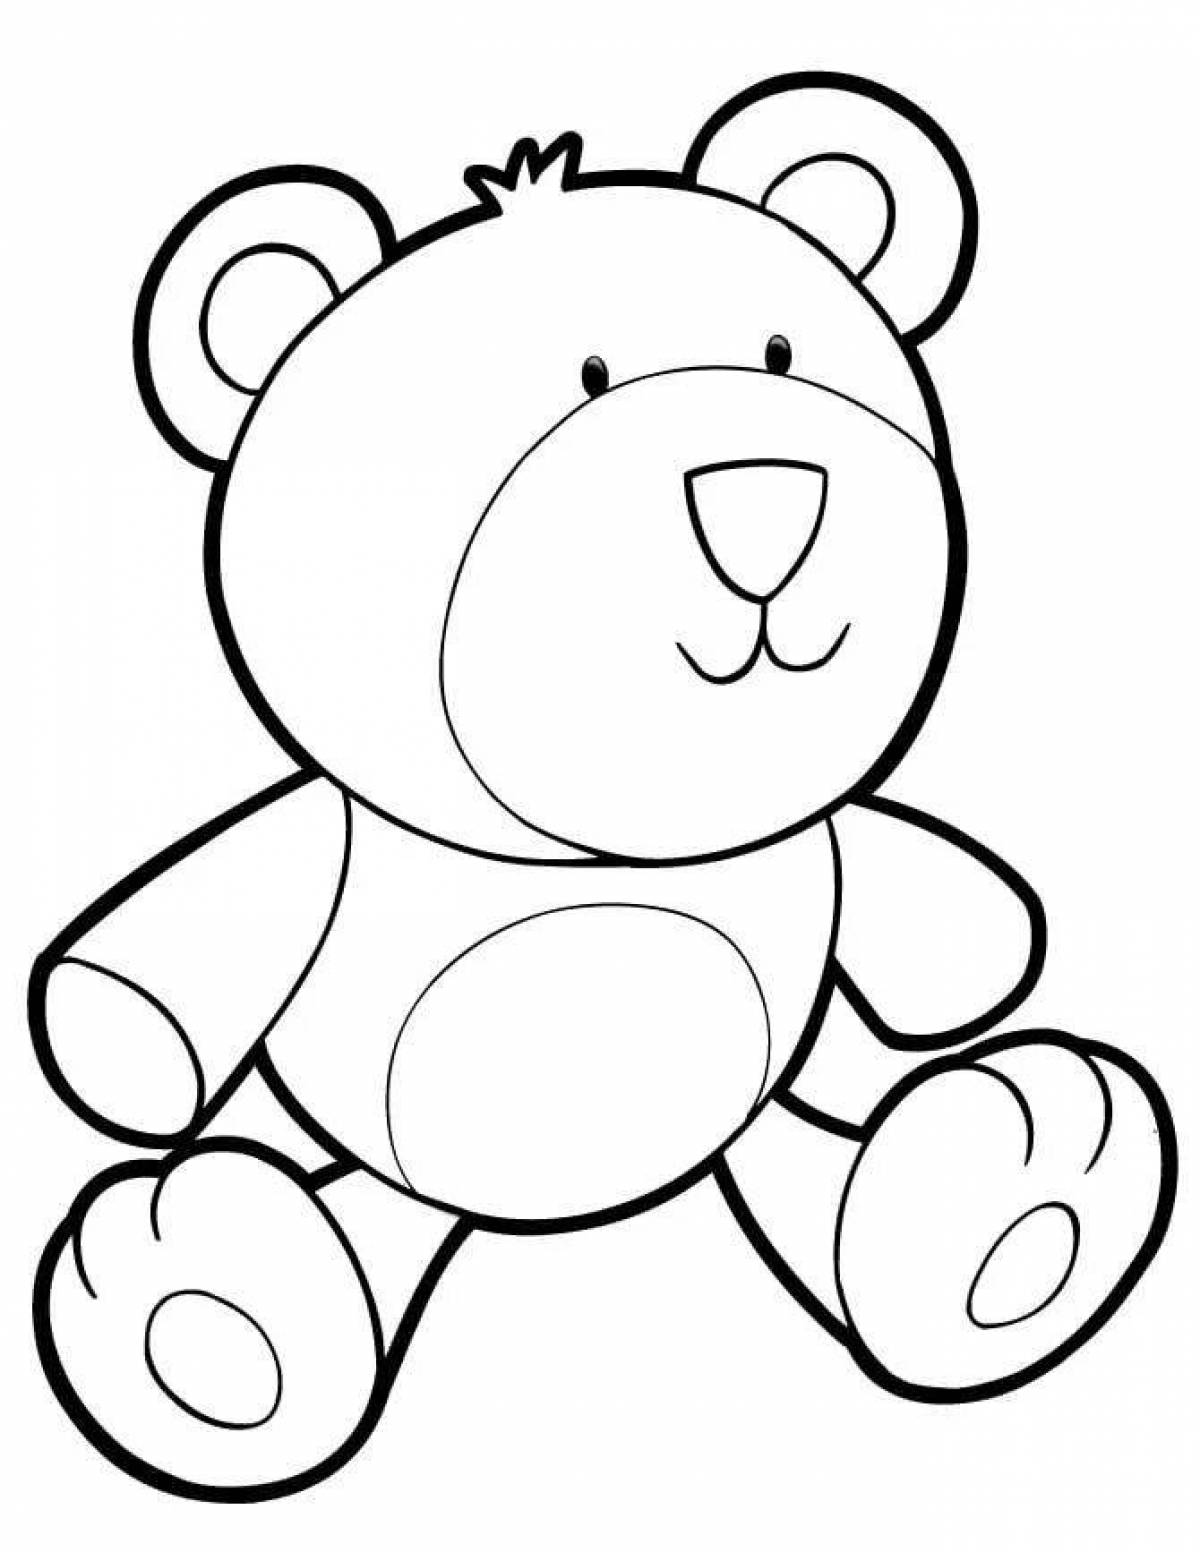 Coloring adorable teddy bear